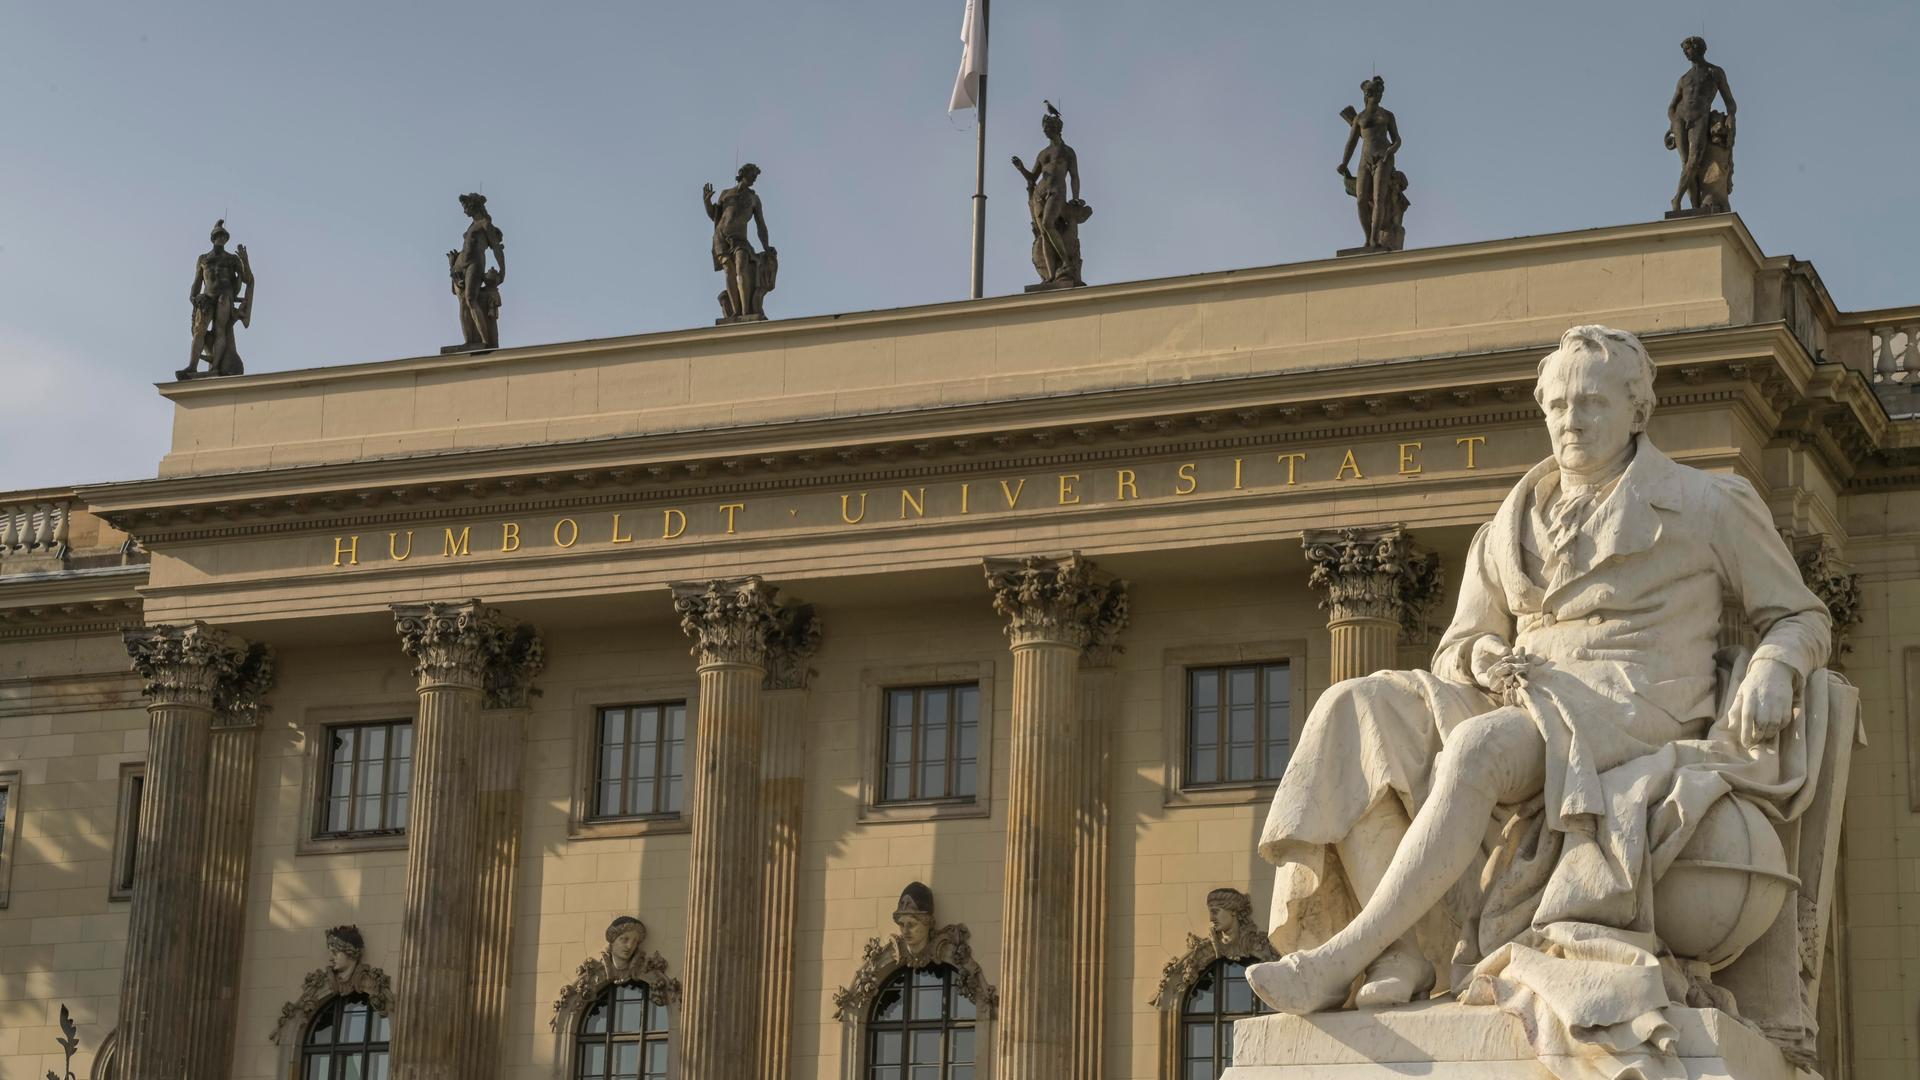 Das Hauptgebäude der Humboldt-Universität zu Berlin.